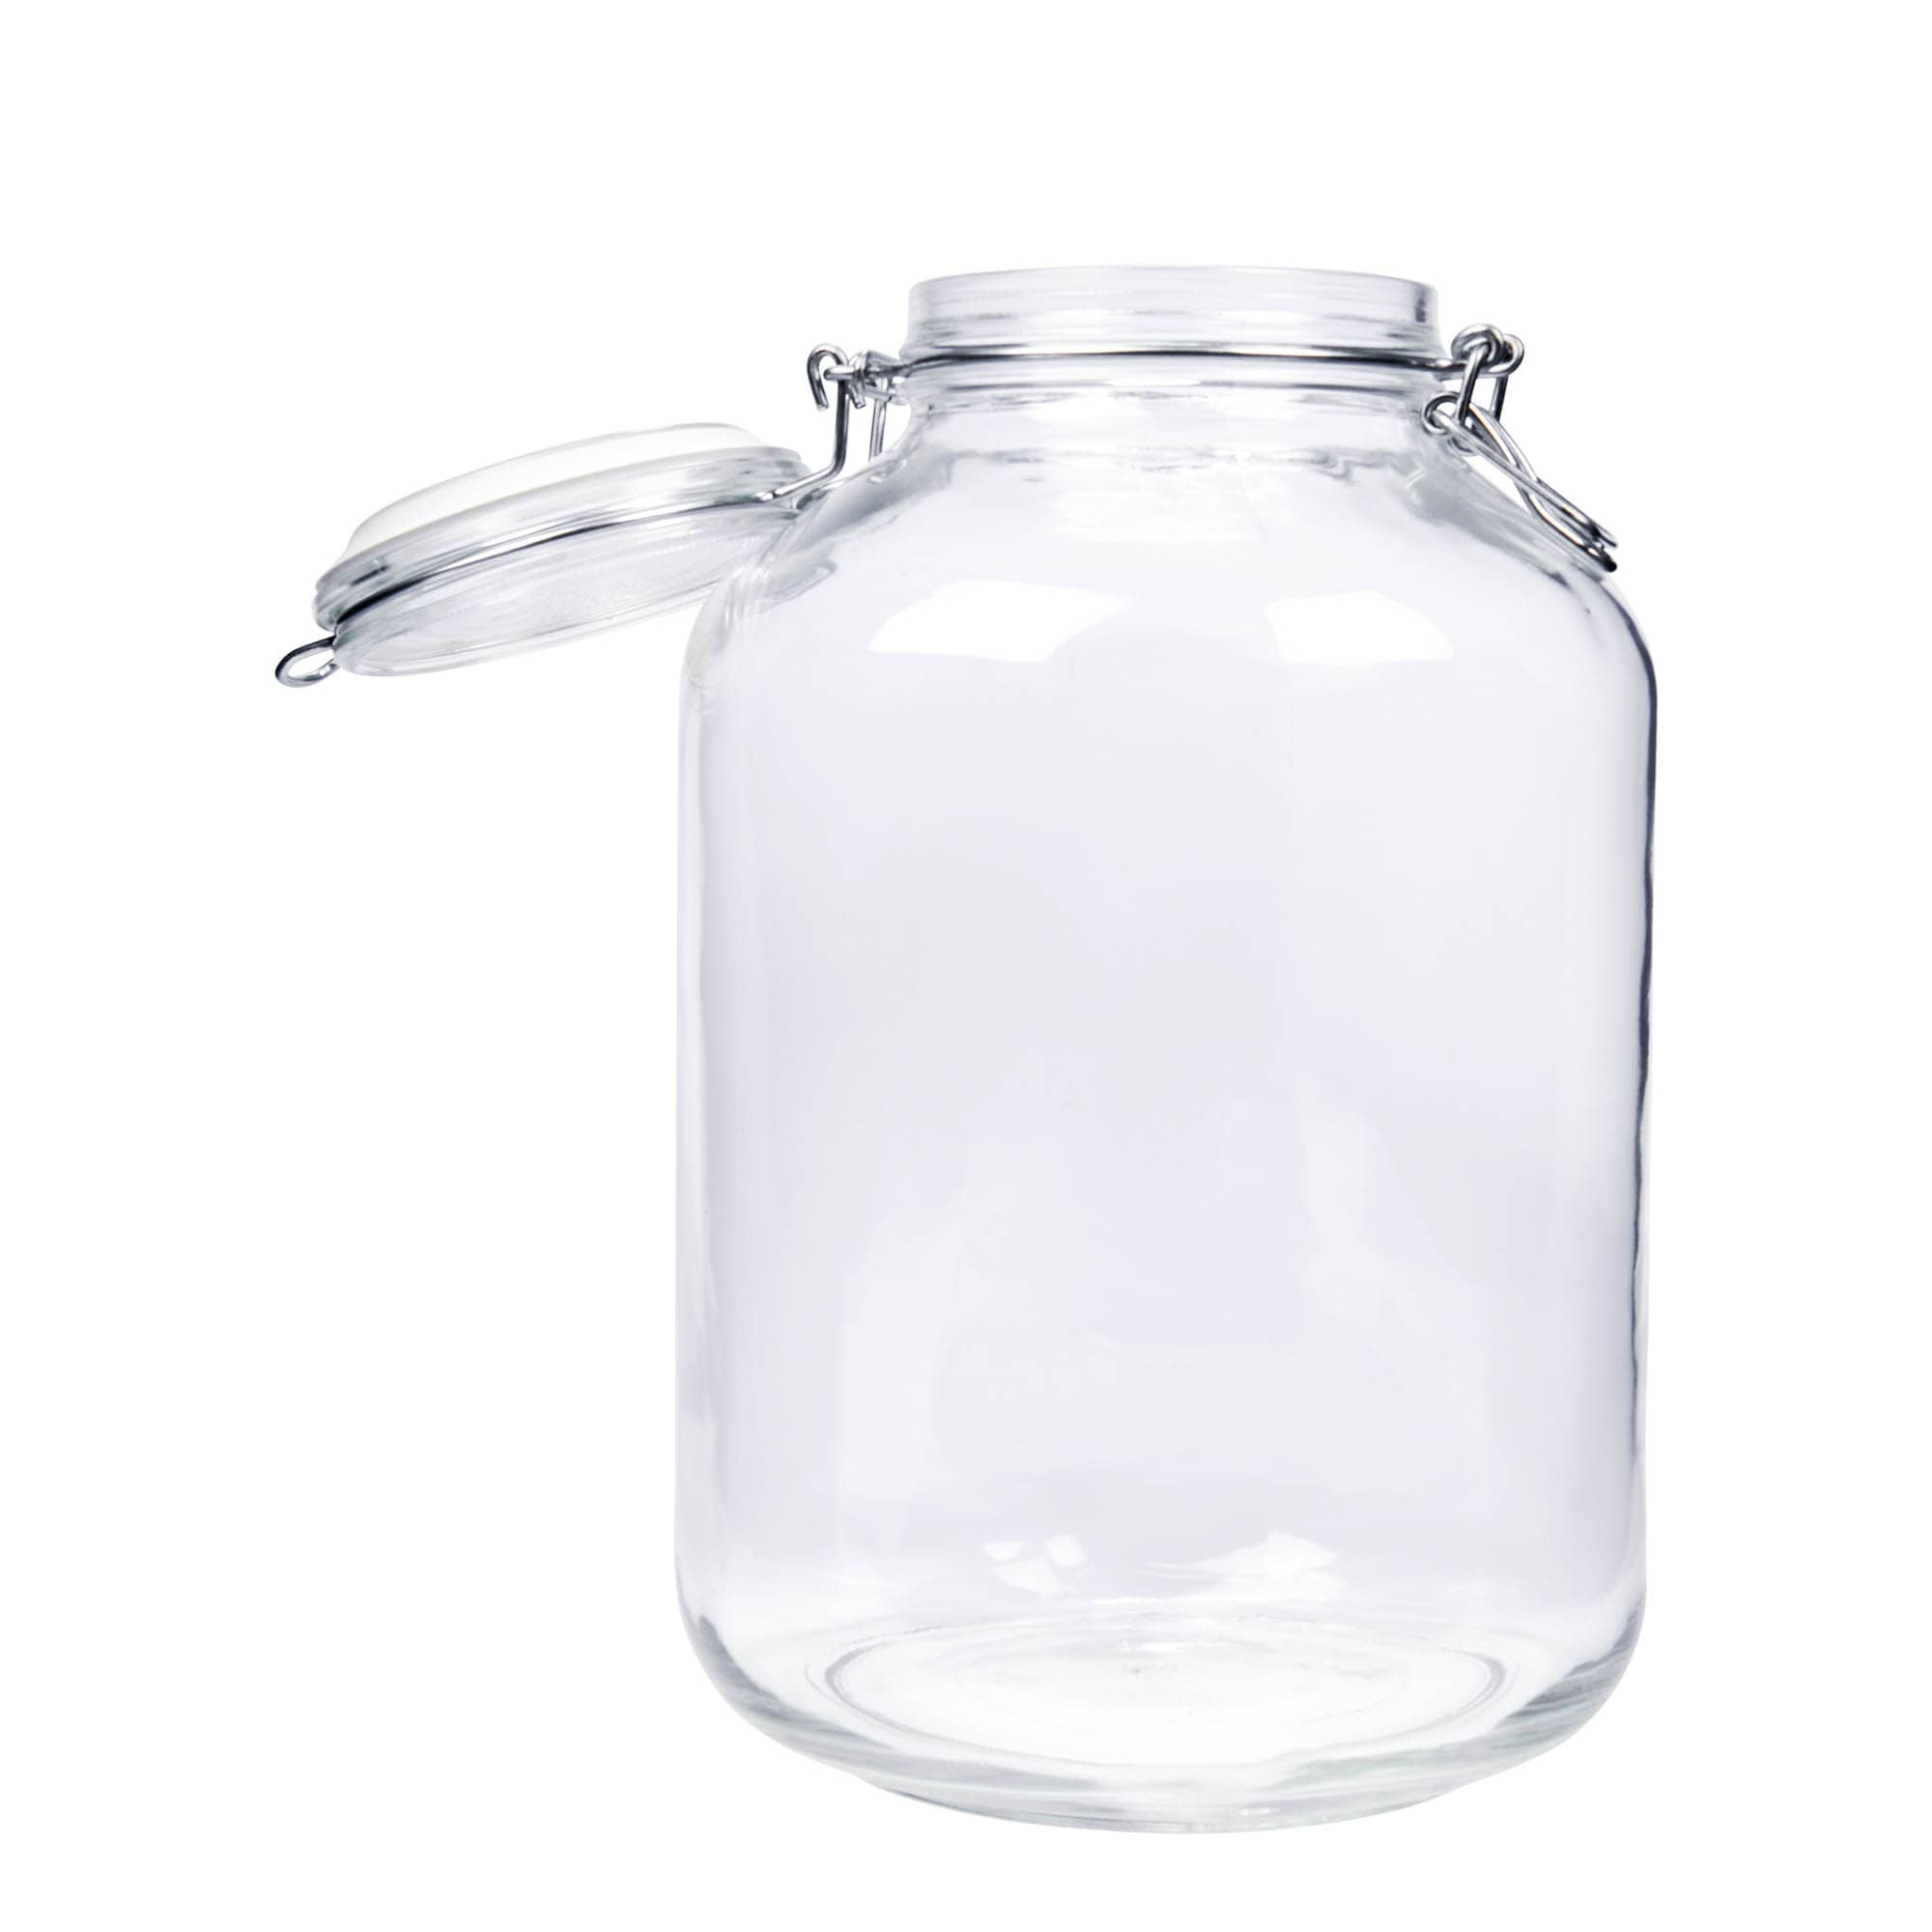 5,000 ml clip top jar 'Fido', closure: clip top